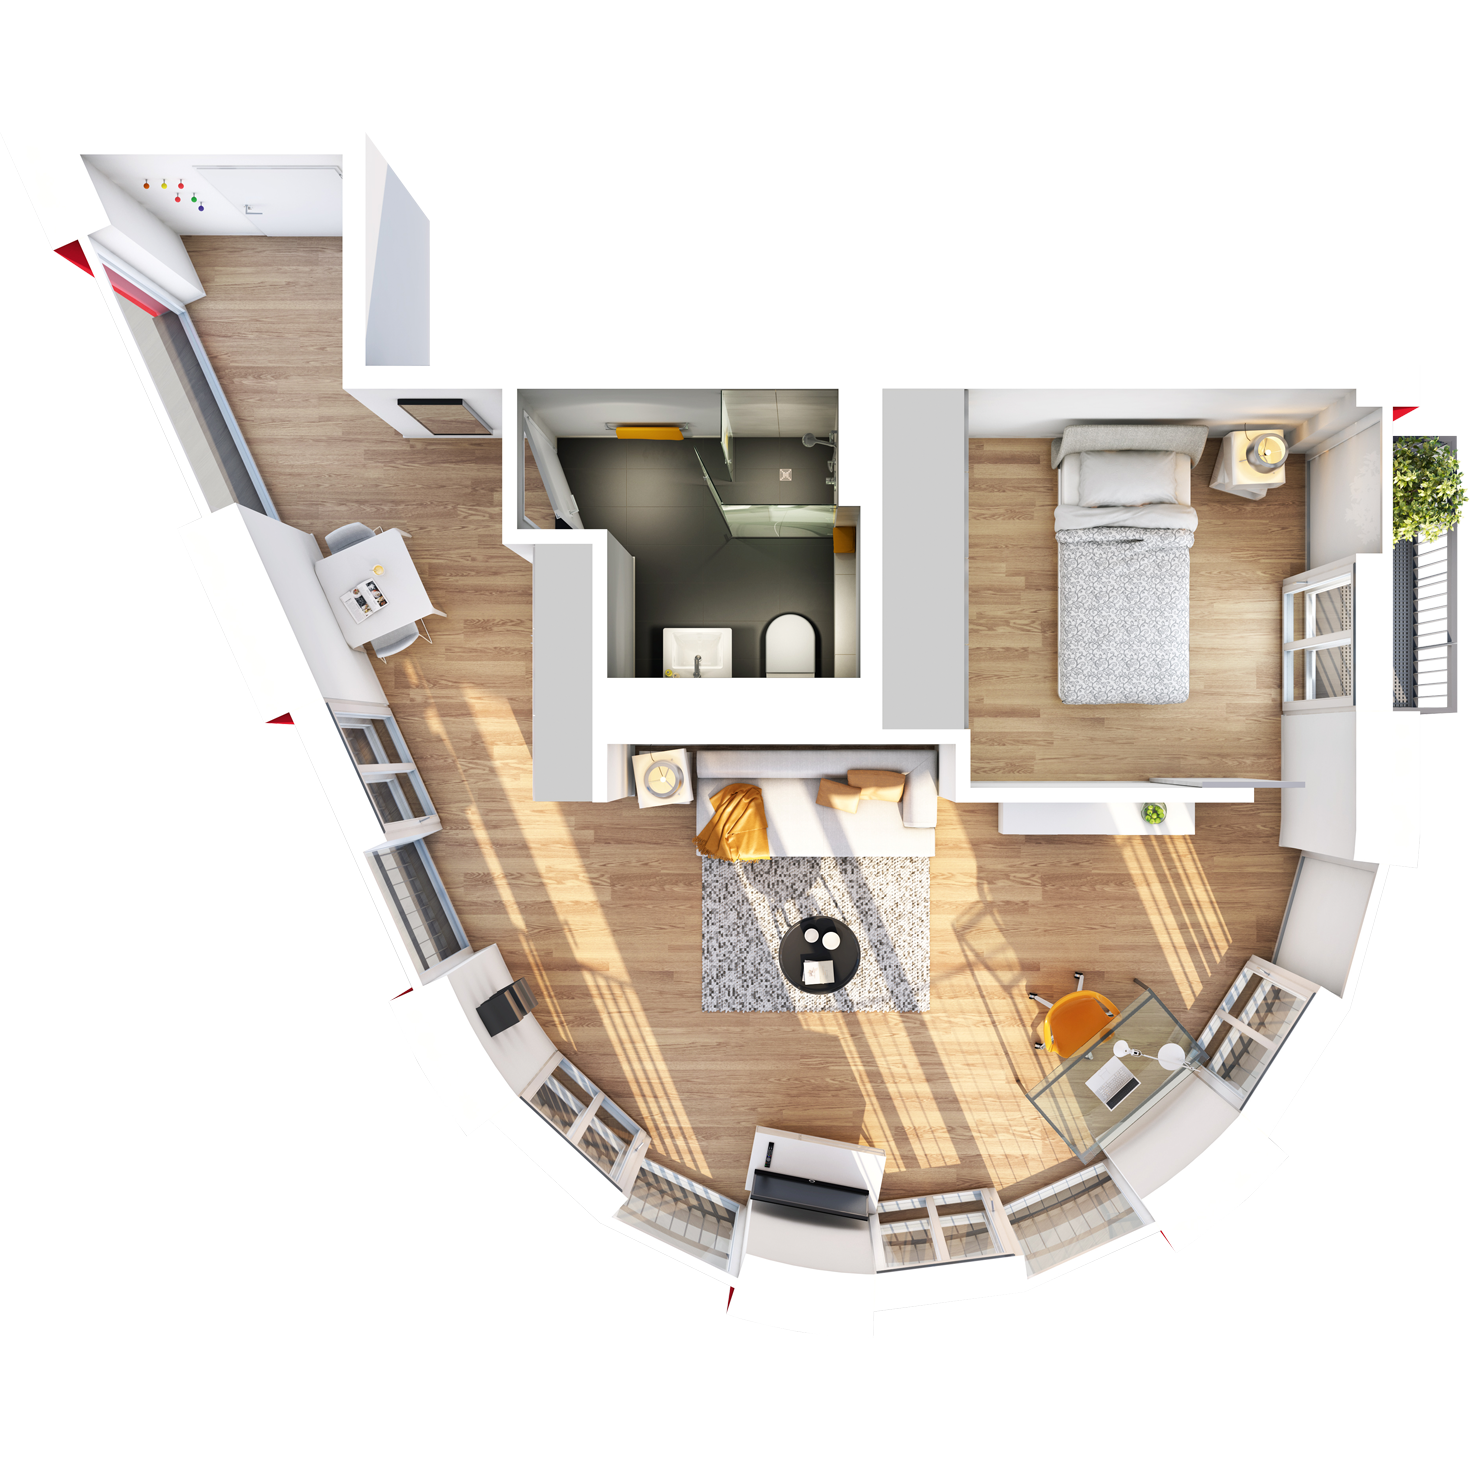 Visualisierung Beispiel 1,5-Zimmer-Wohnung Typ F mit exklusivem, halbrunden Wohnschnitt mit Bad, abgetrennter Küche, großem Wohn- und separatem Schlafbereich und Balkon im studiosus 5 Apartmenthaus in Augsburg